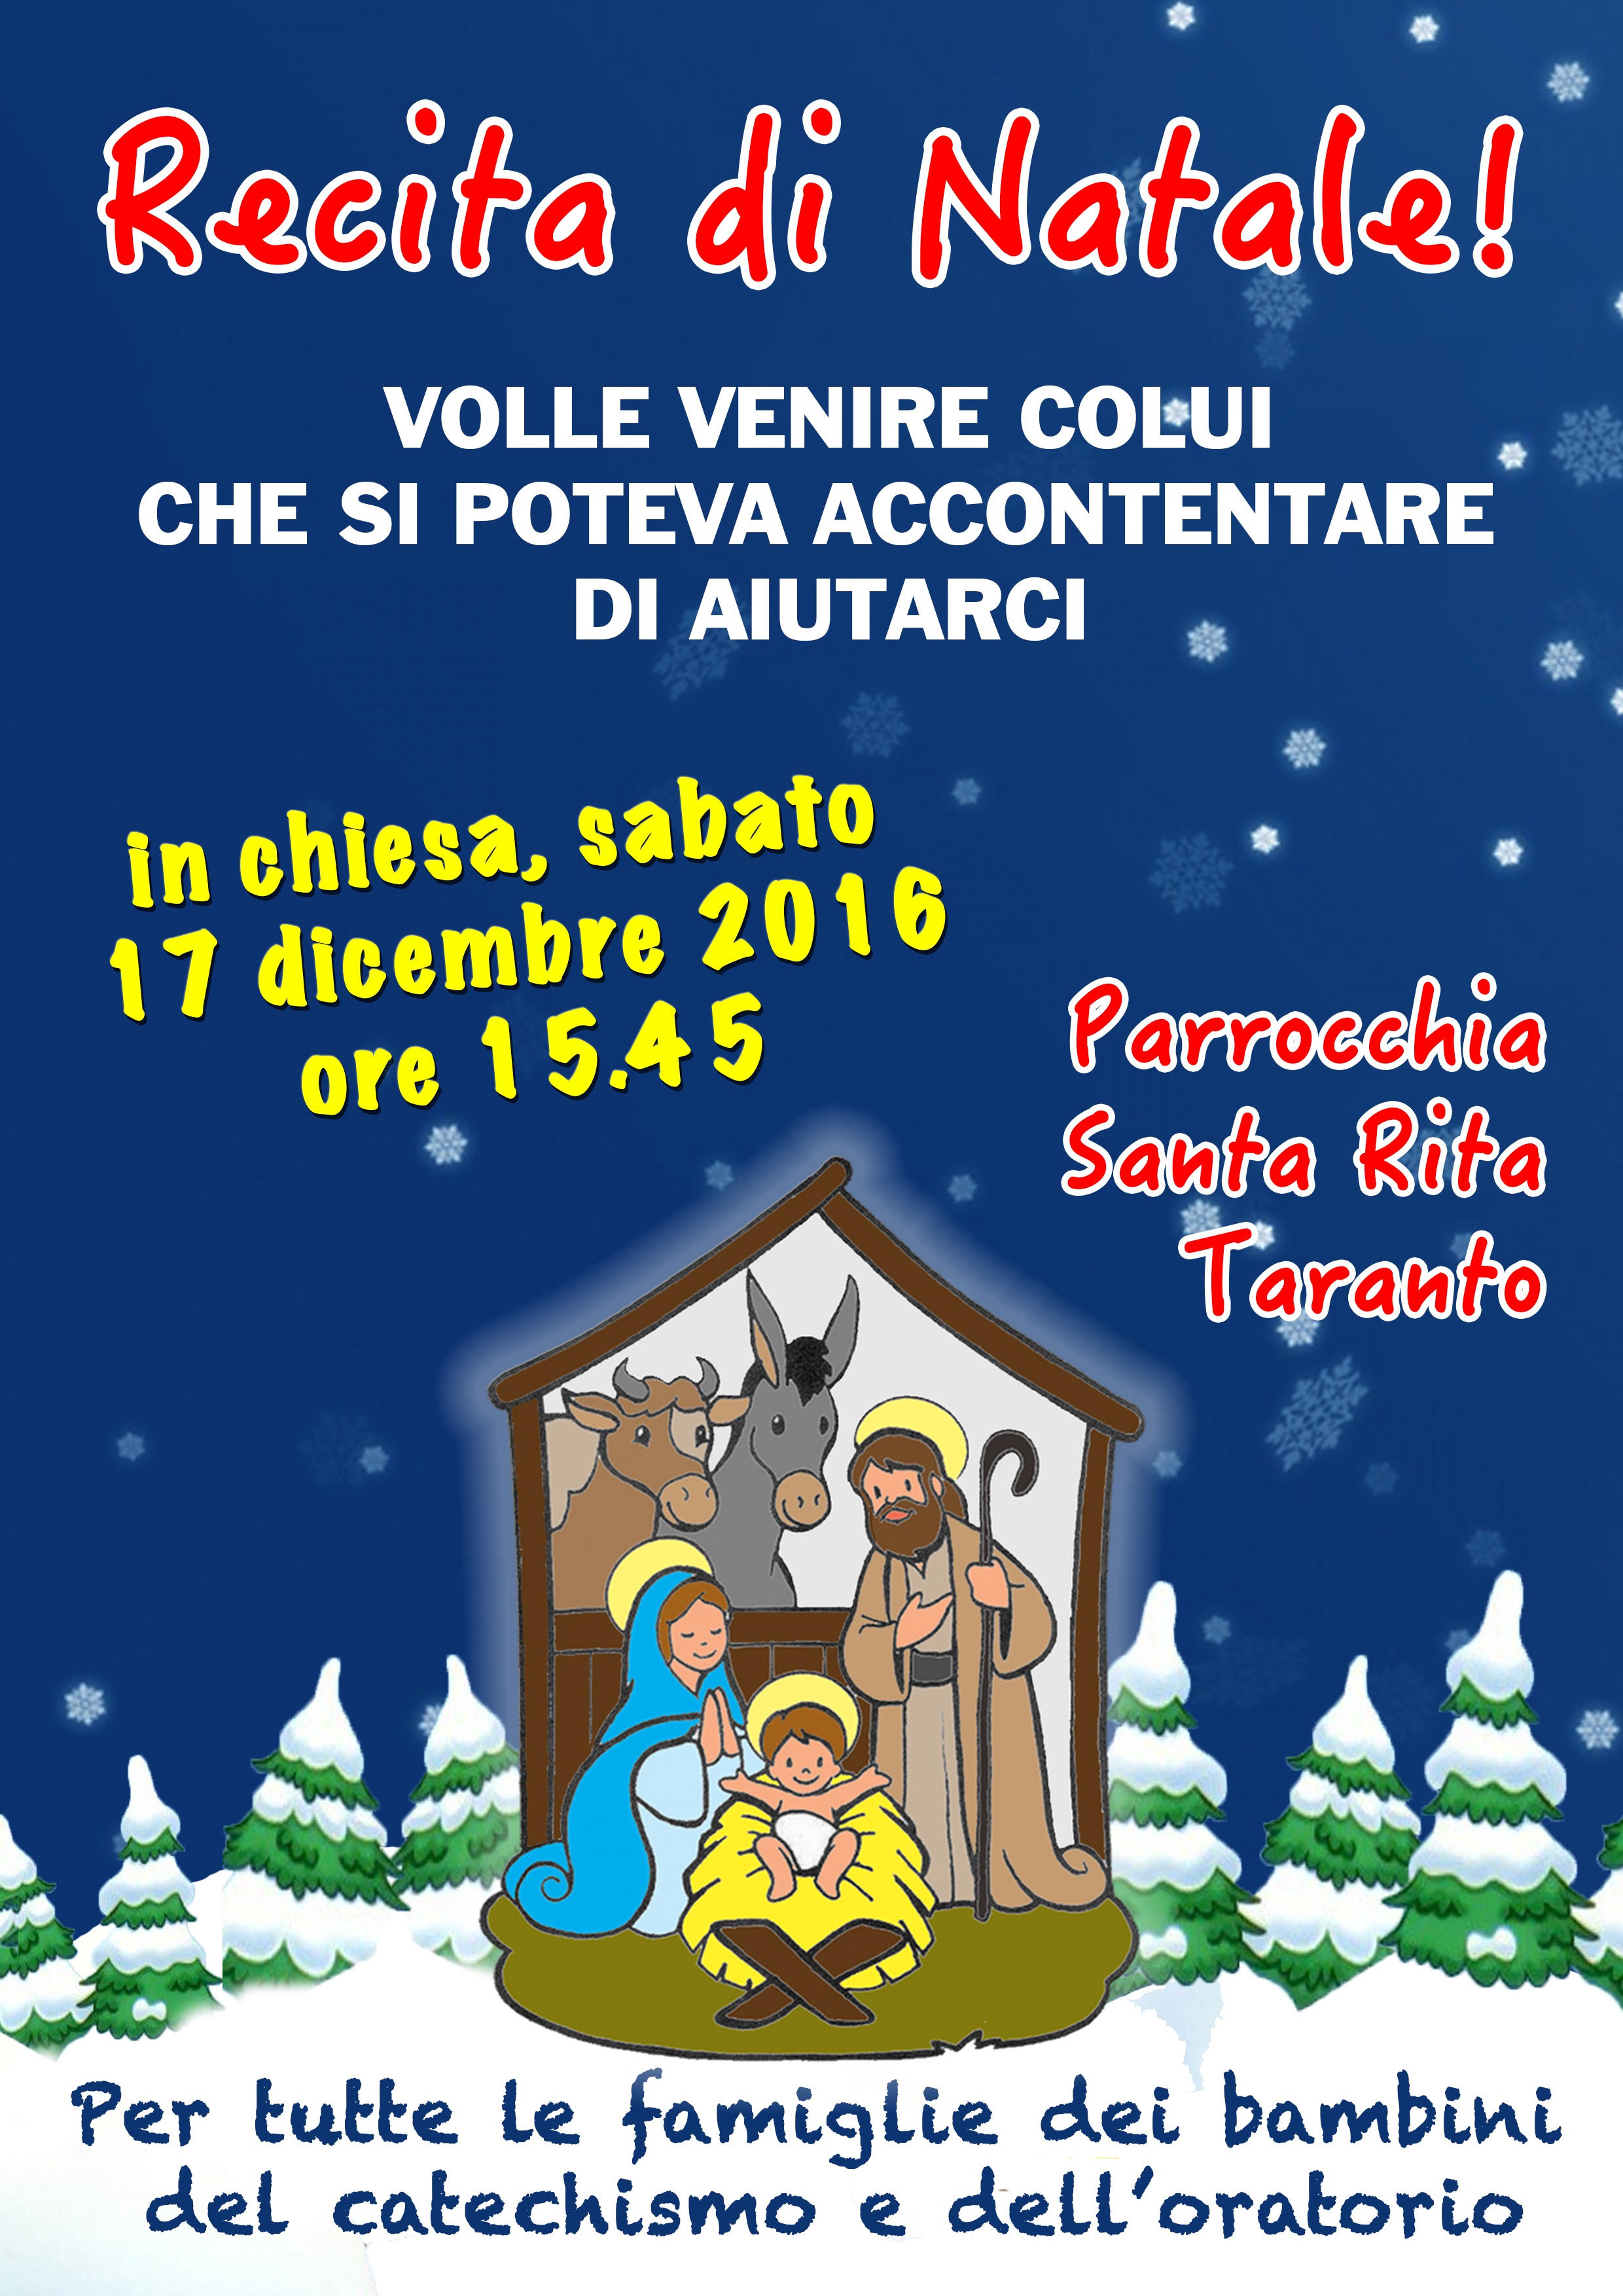 Recita Di Natale.17 Dicembre 2016 Recita Di Natale Parrocchia Di Santa Rita Taranto